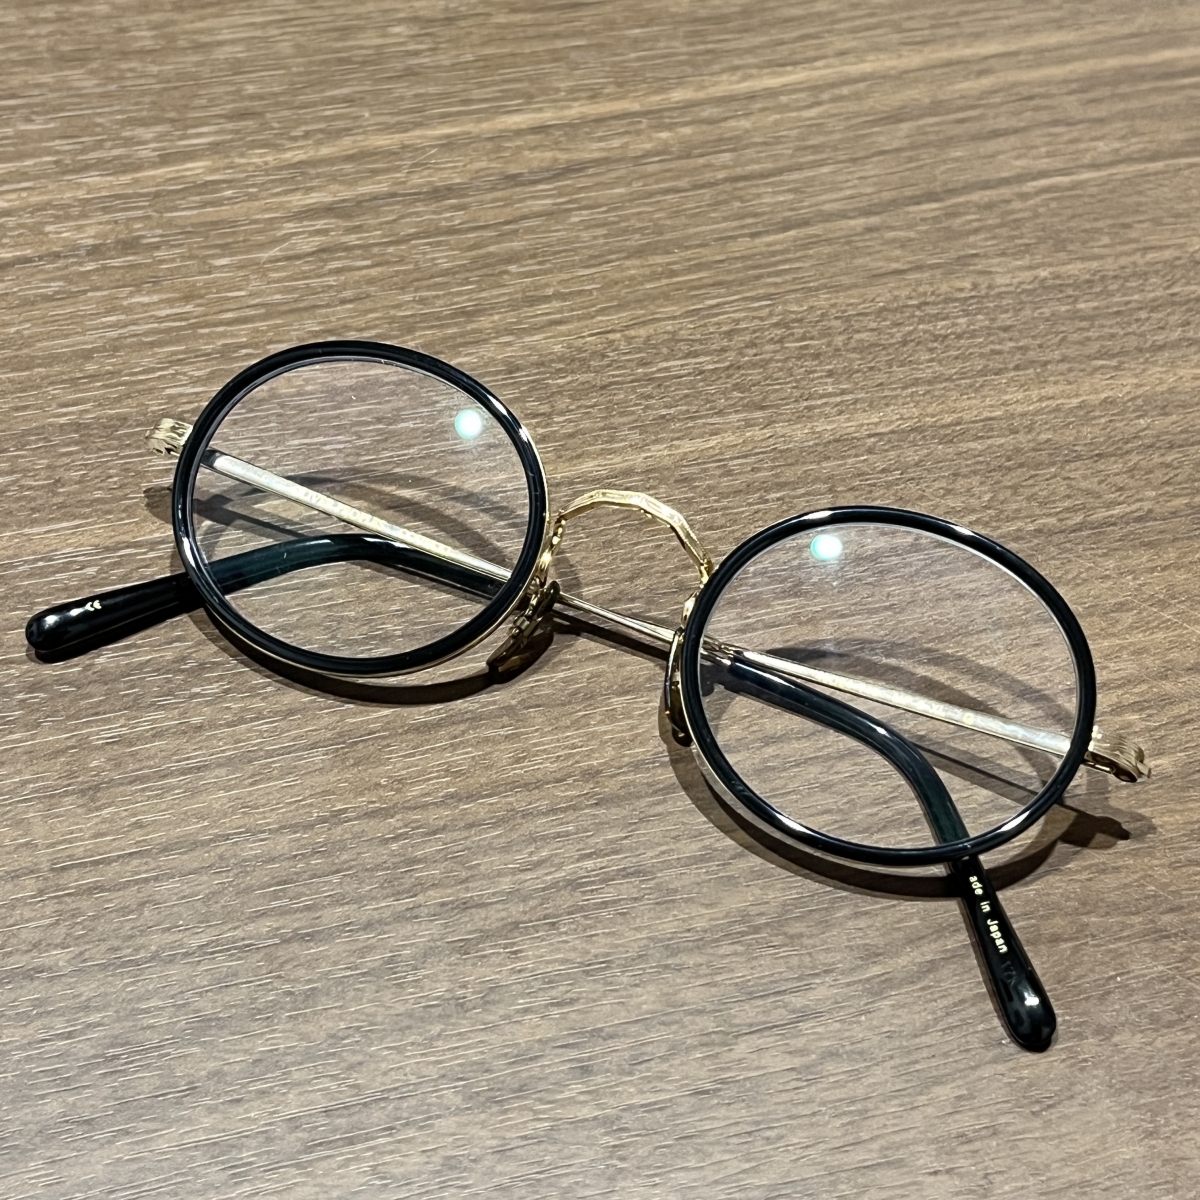 オリバーピープルズのフレーム眼鏡 30周年記念 アーカイブ復刻モデル MP-8-XLの買取実績です。